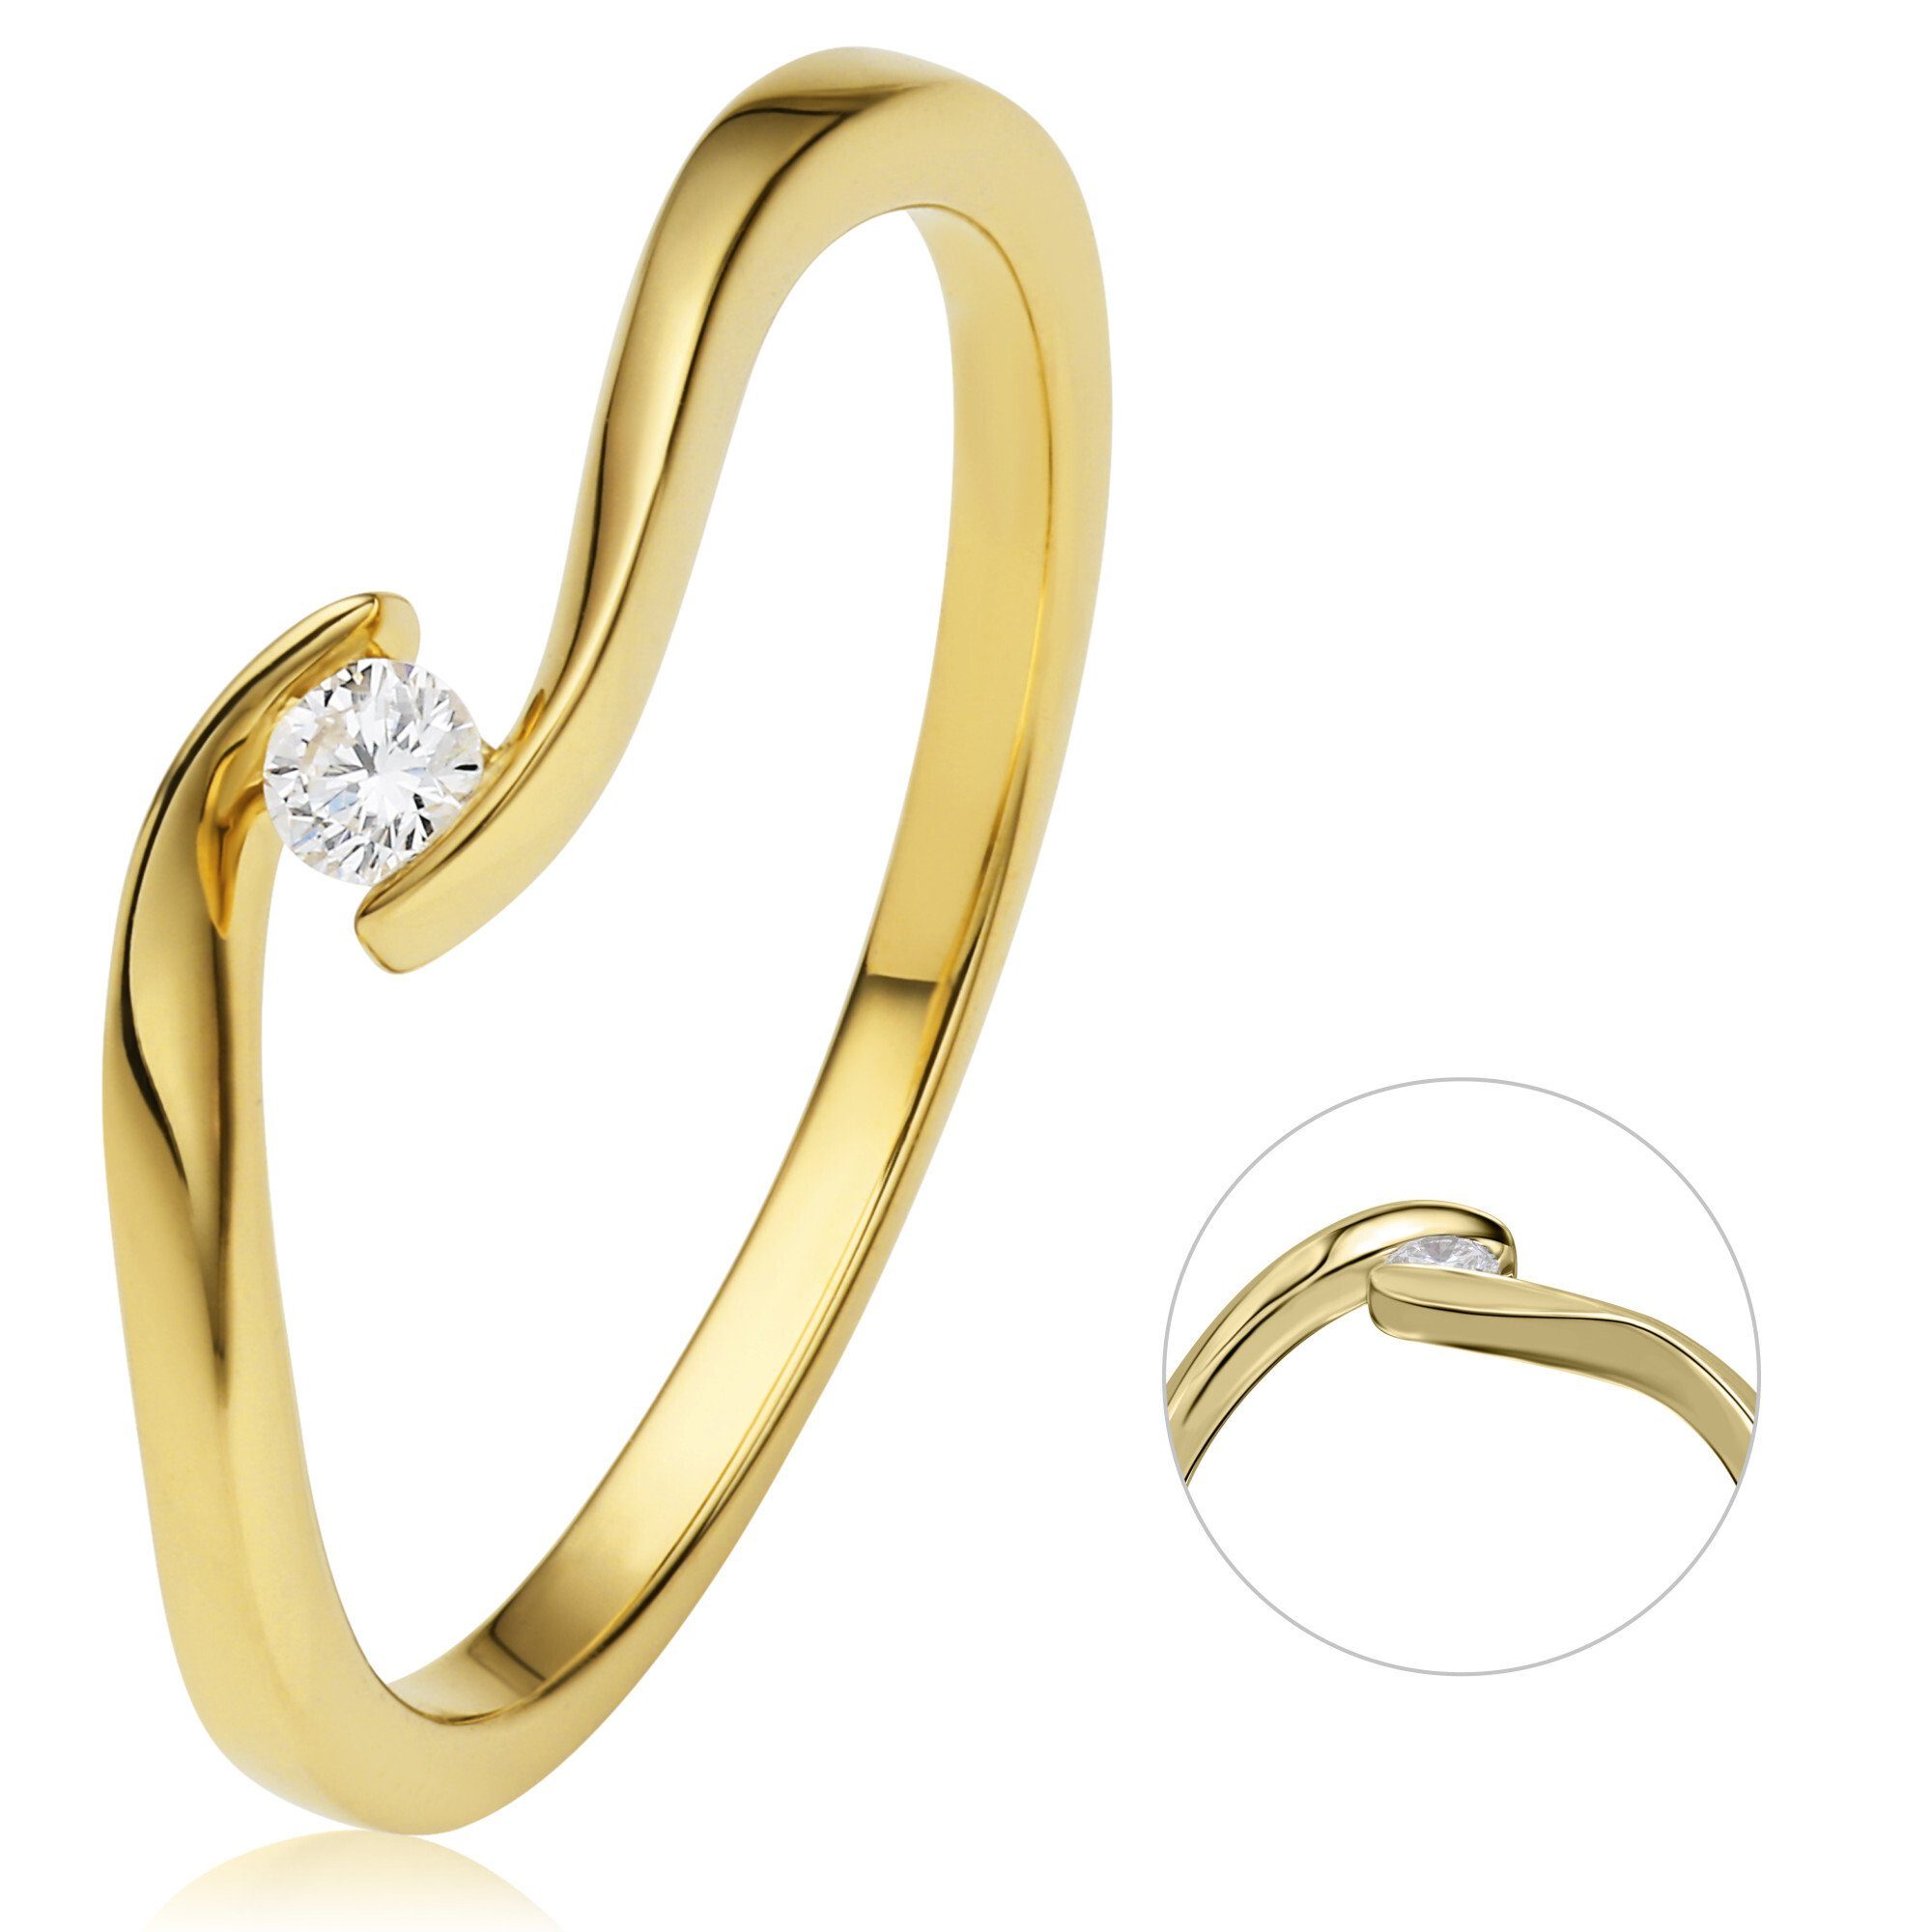 Spannfassung Diamant aus Brillant 750 Damen Spannfassung ONE ELEMENT Schmuck Gelbgold, Diamantring Gold Ring ct 0,05